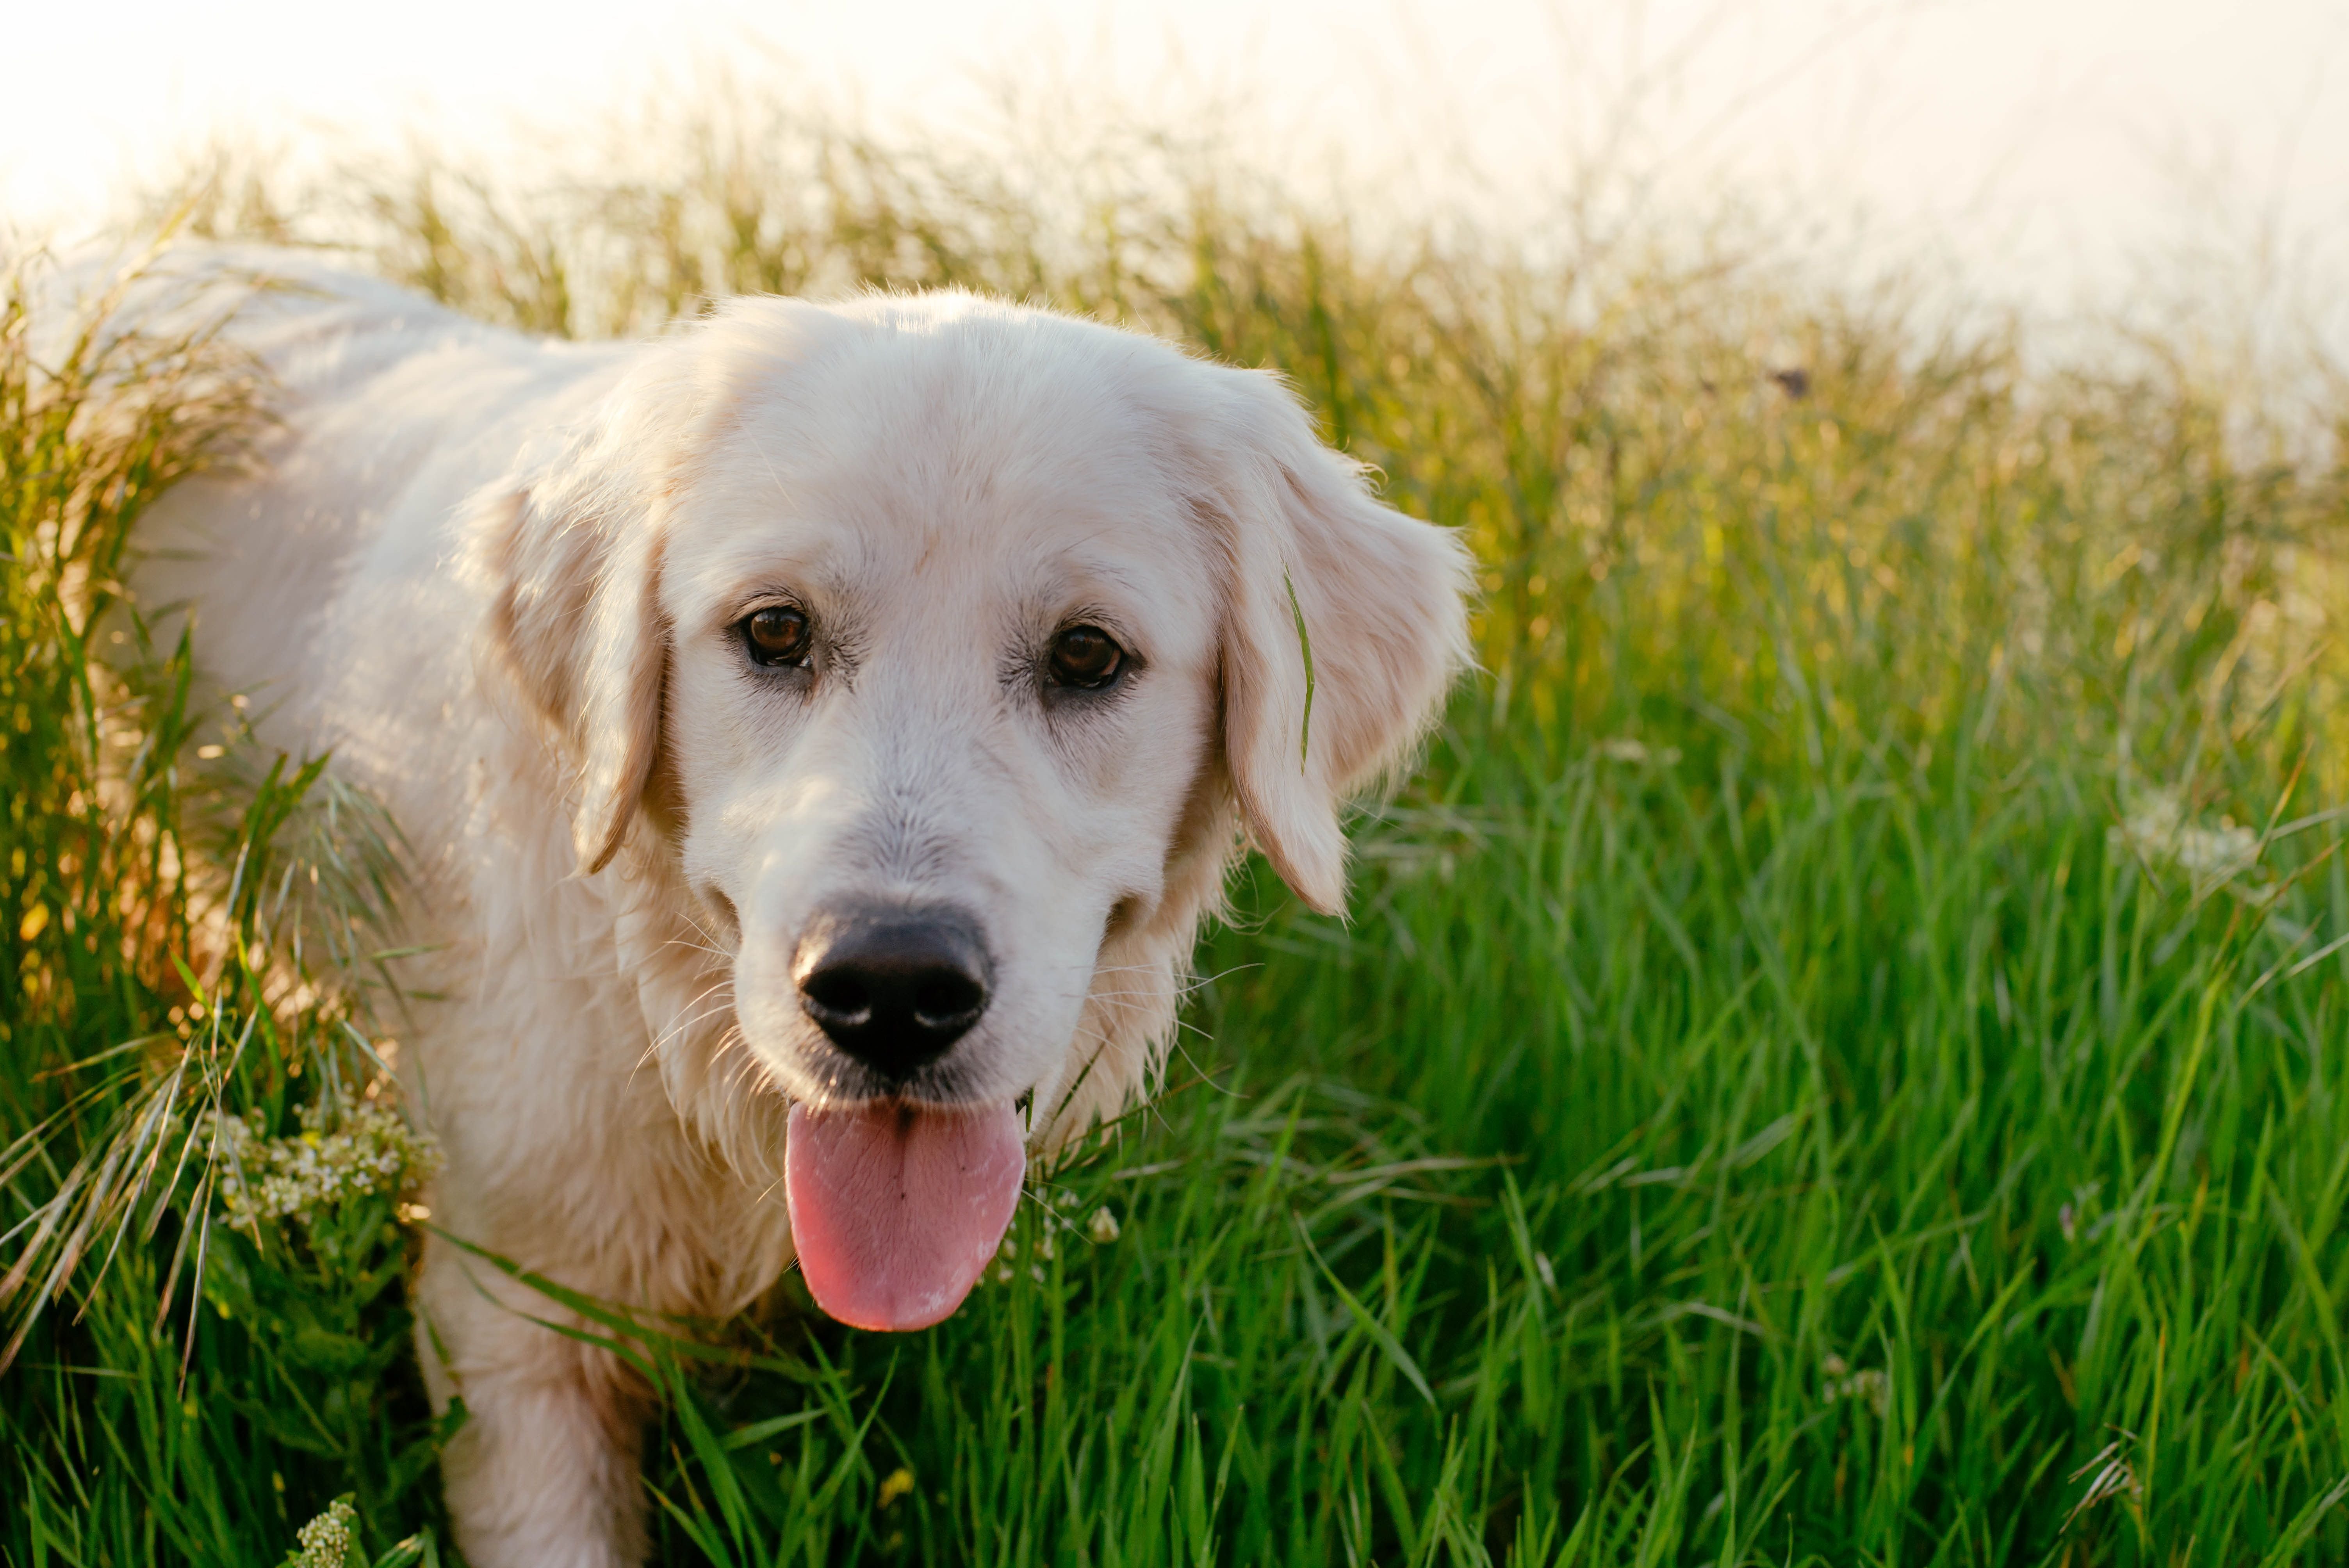 An adult labrador dog. | Source: Shutterstocks